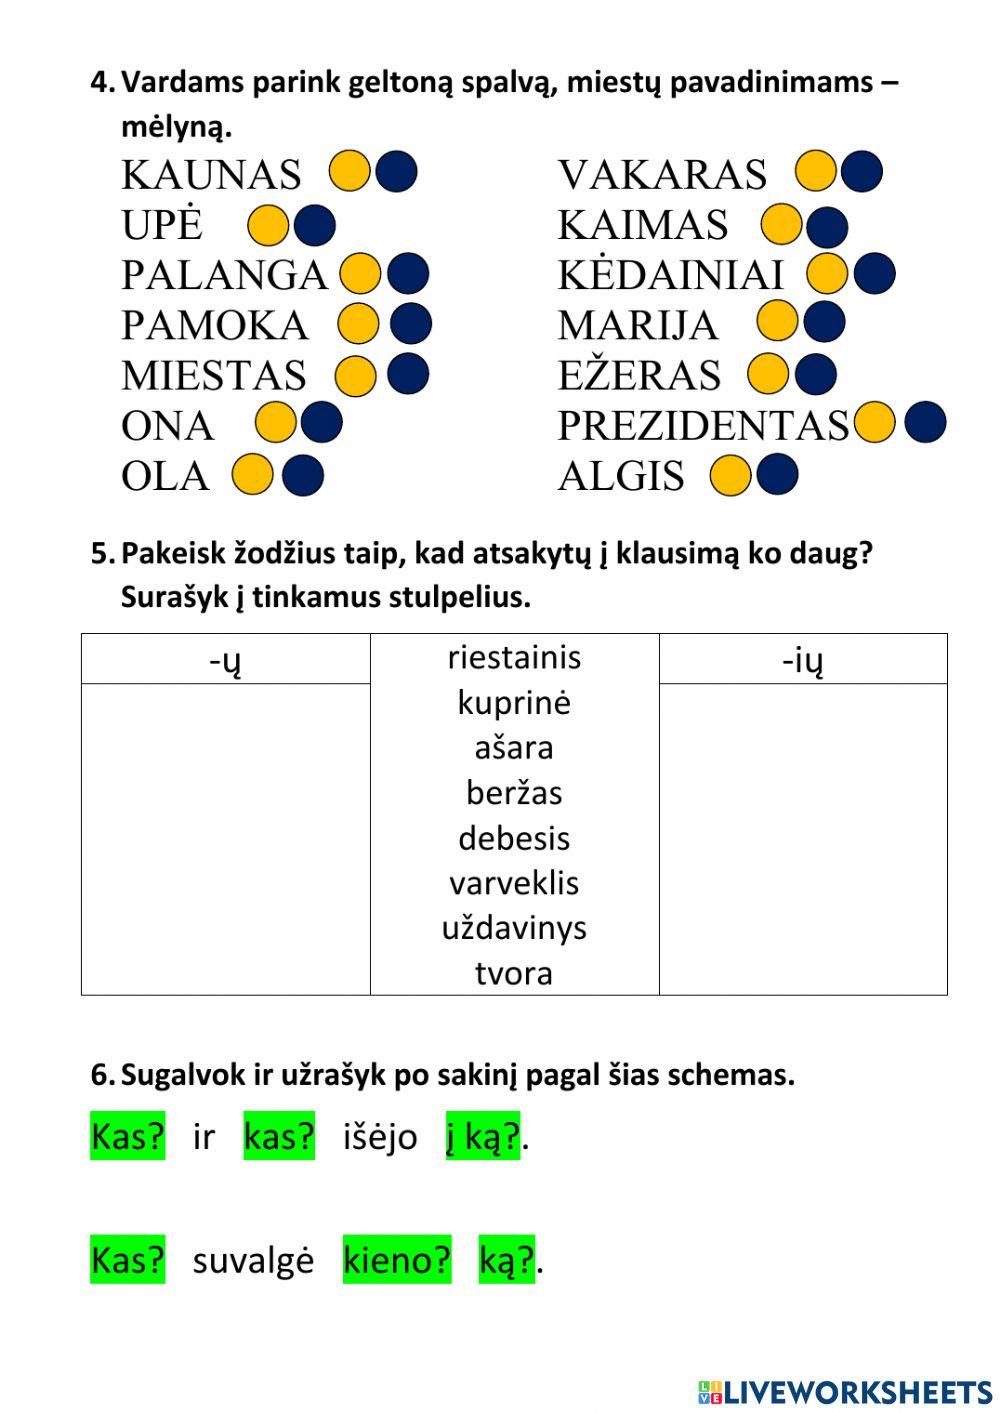 Lietuvių kalbos testas Nr. 6